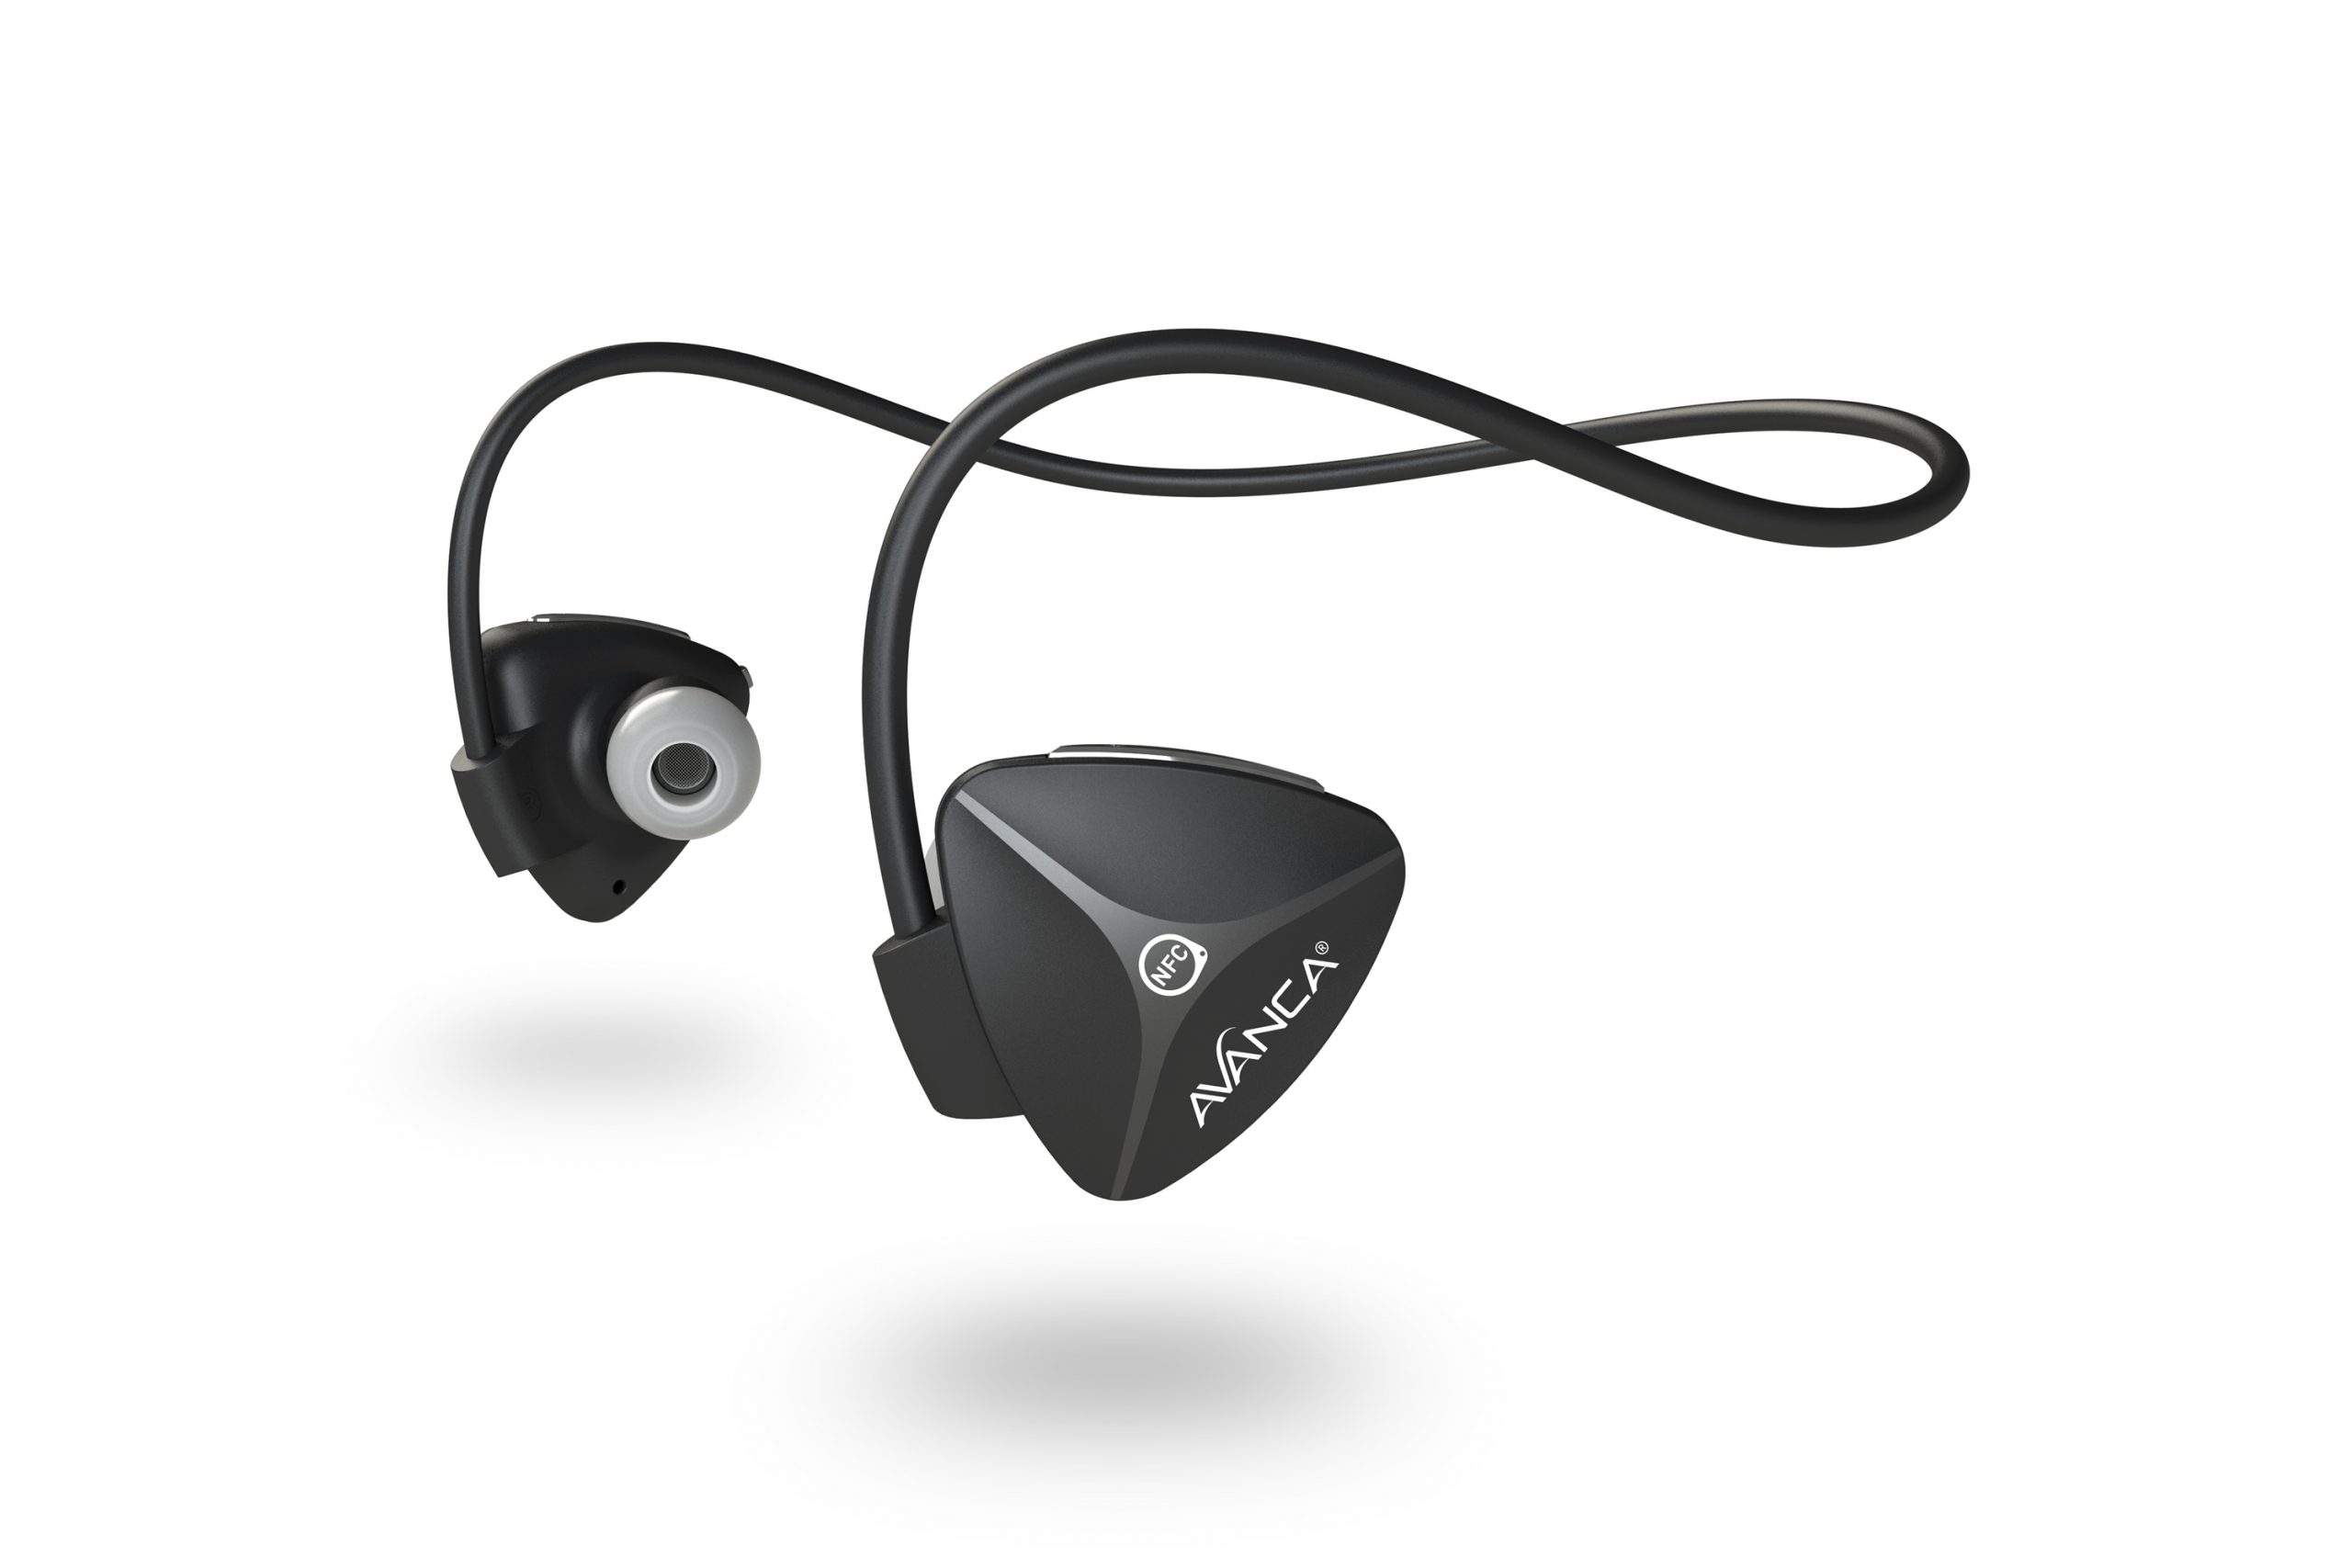 Seizoen In beweging Theoretisch Sport Headset Avanca D1 Wireless Sports Headphones | AVANCA®